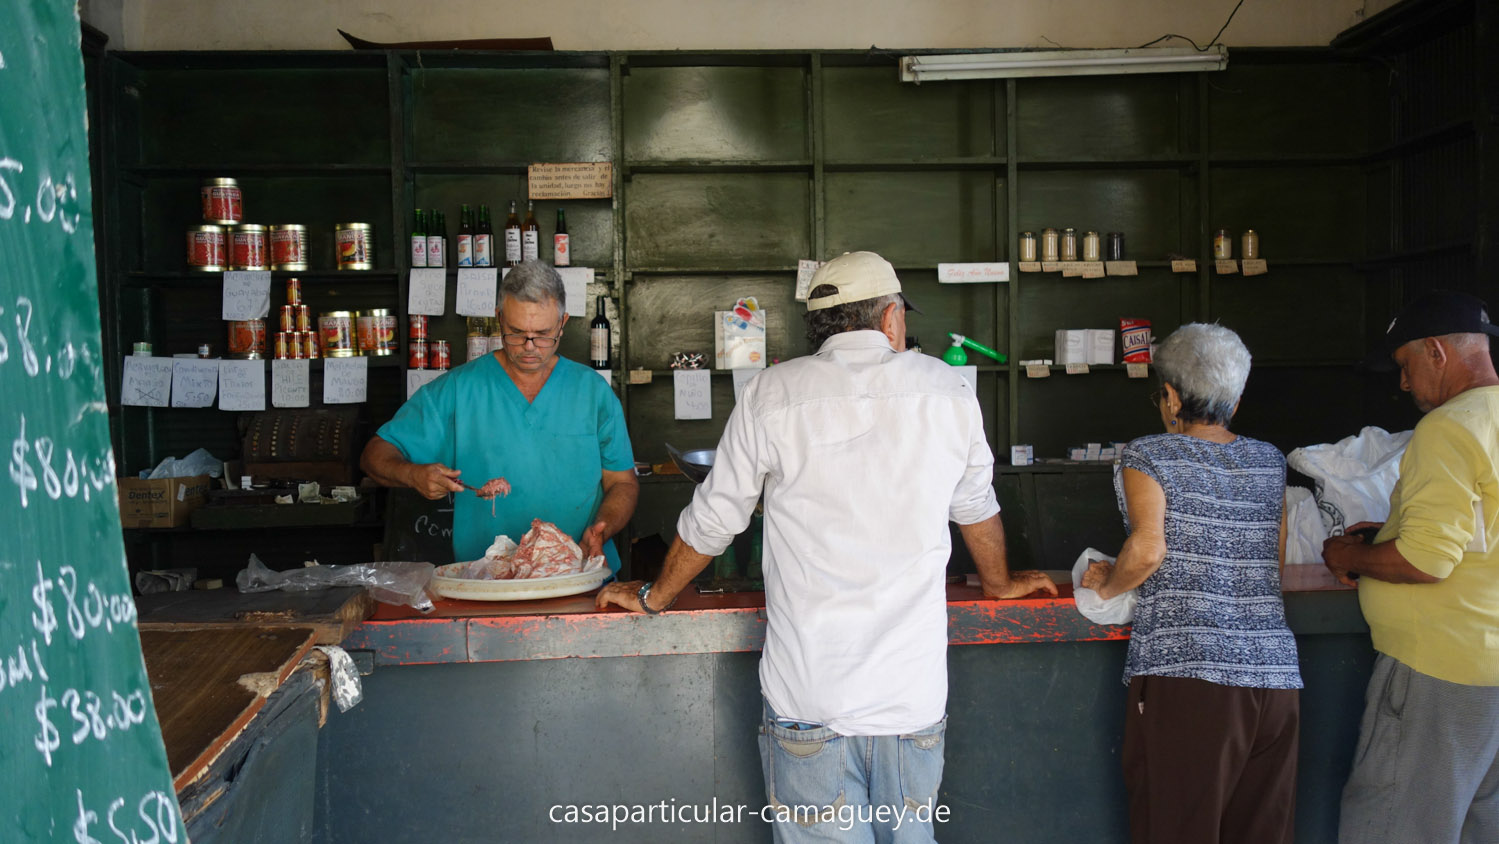 Bei einer Reise durch Kuba sieht man öfters solche landestypischen Verkaufsstellen